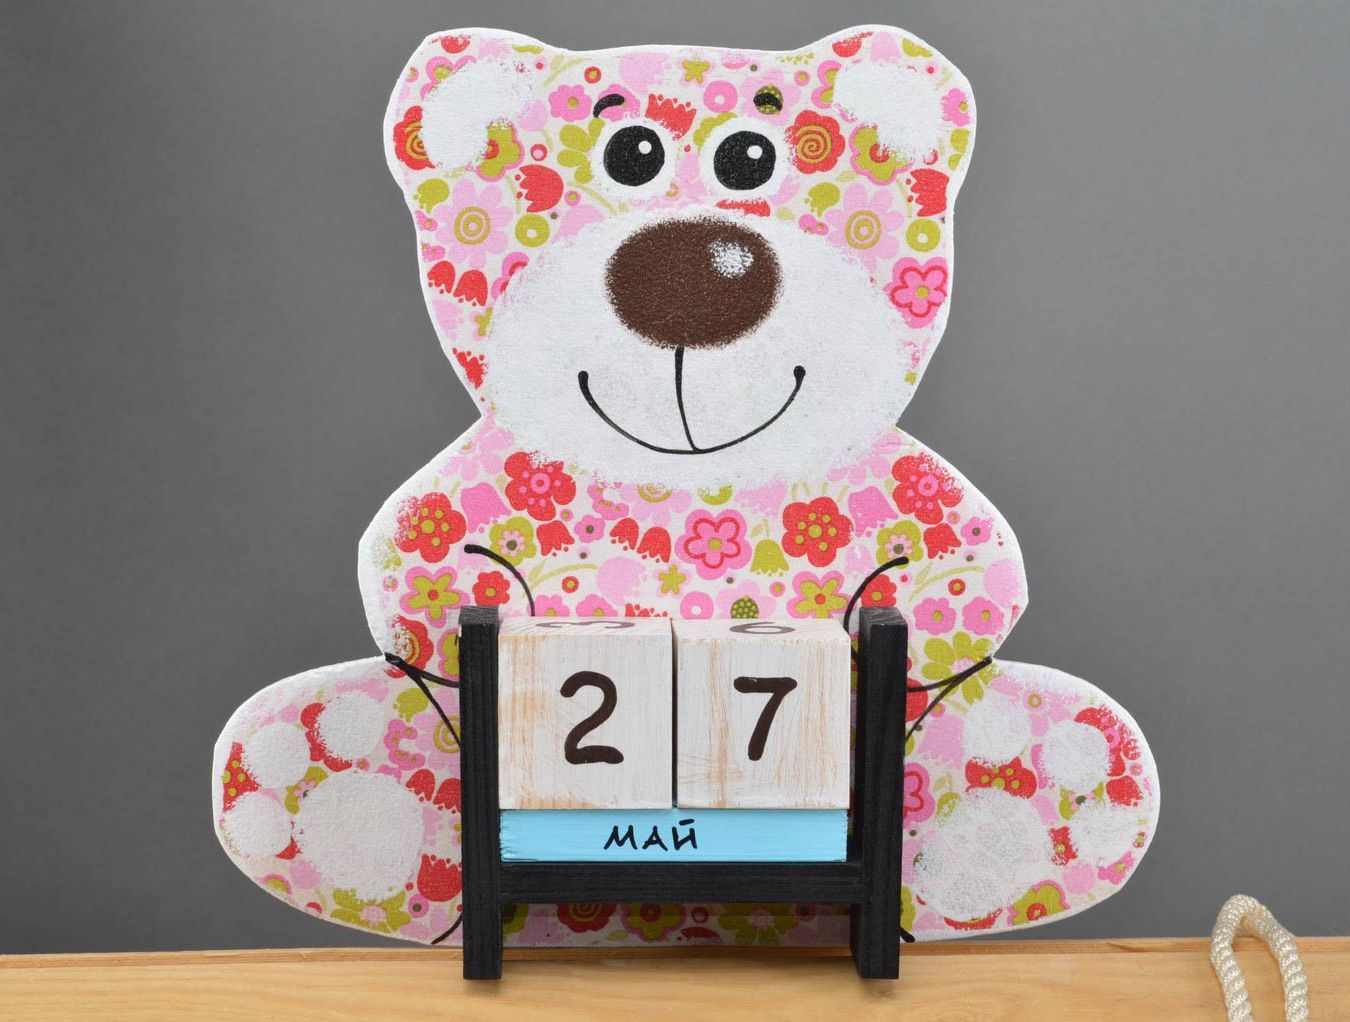 Милый календарь в виде медведя который держит кубики детский декупаж хенд мейд фото 2